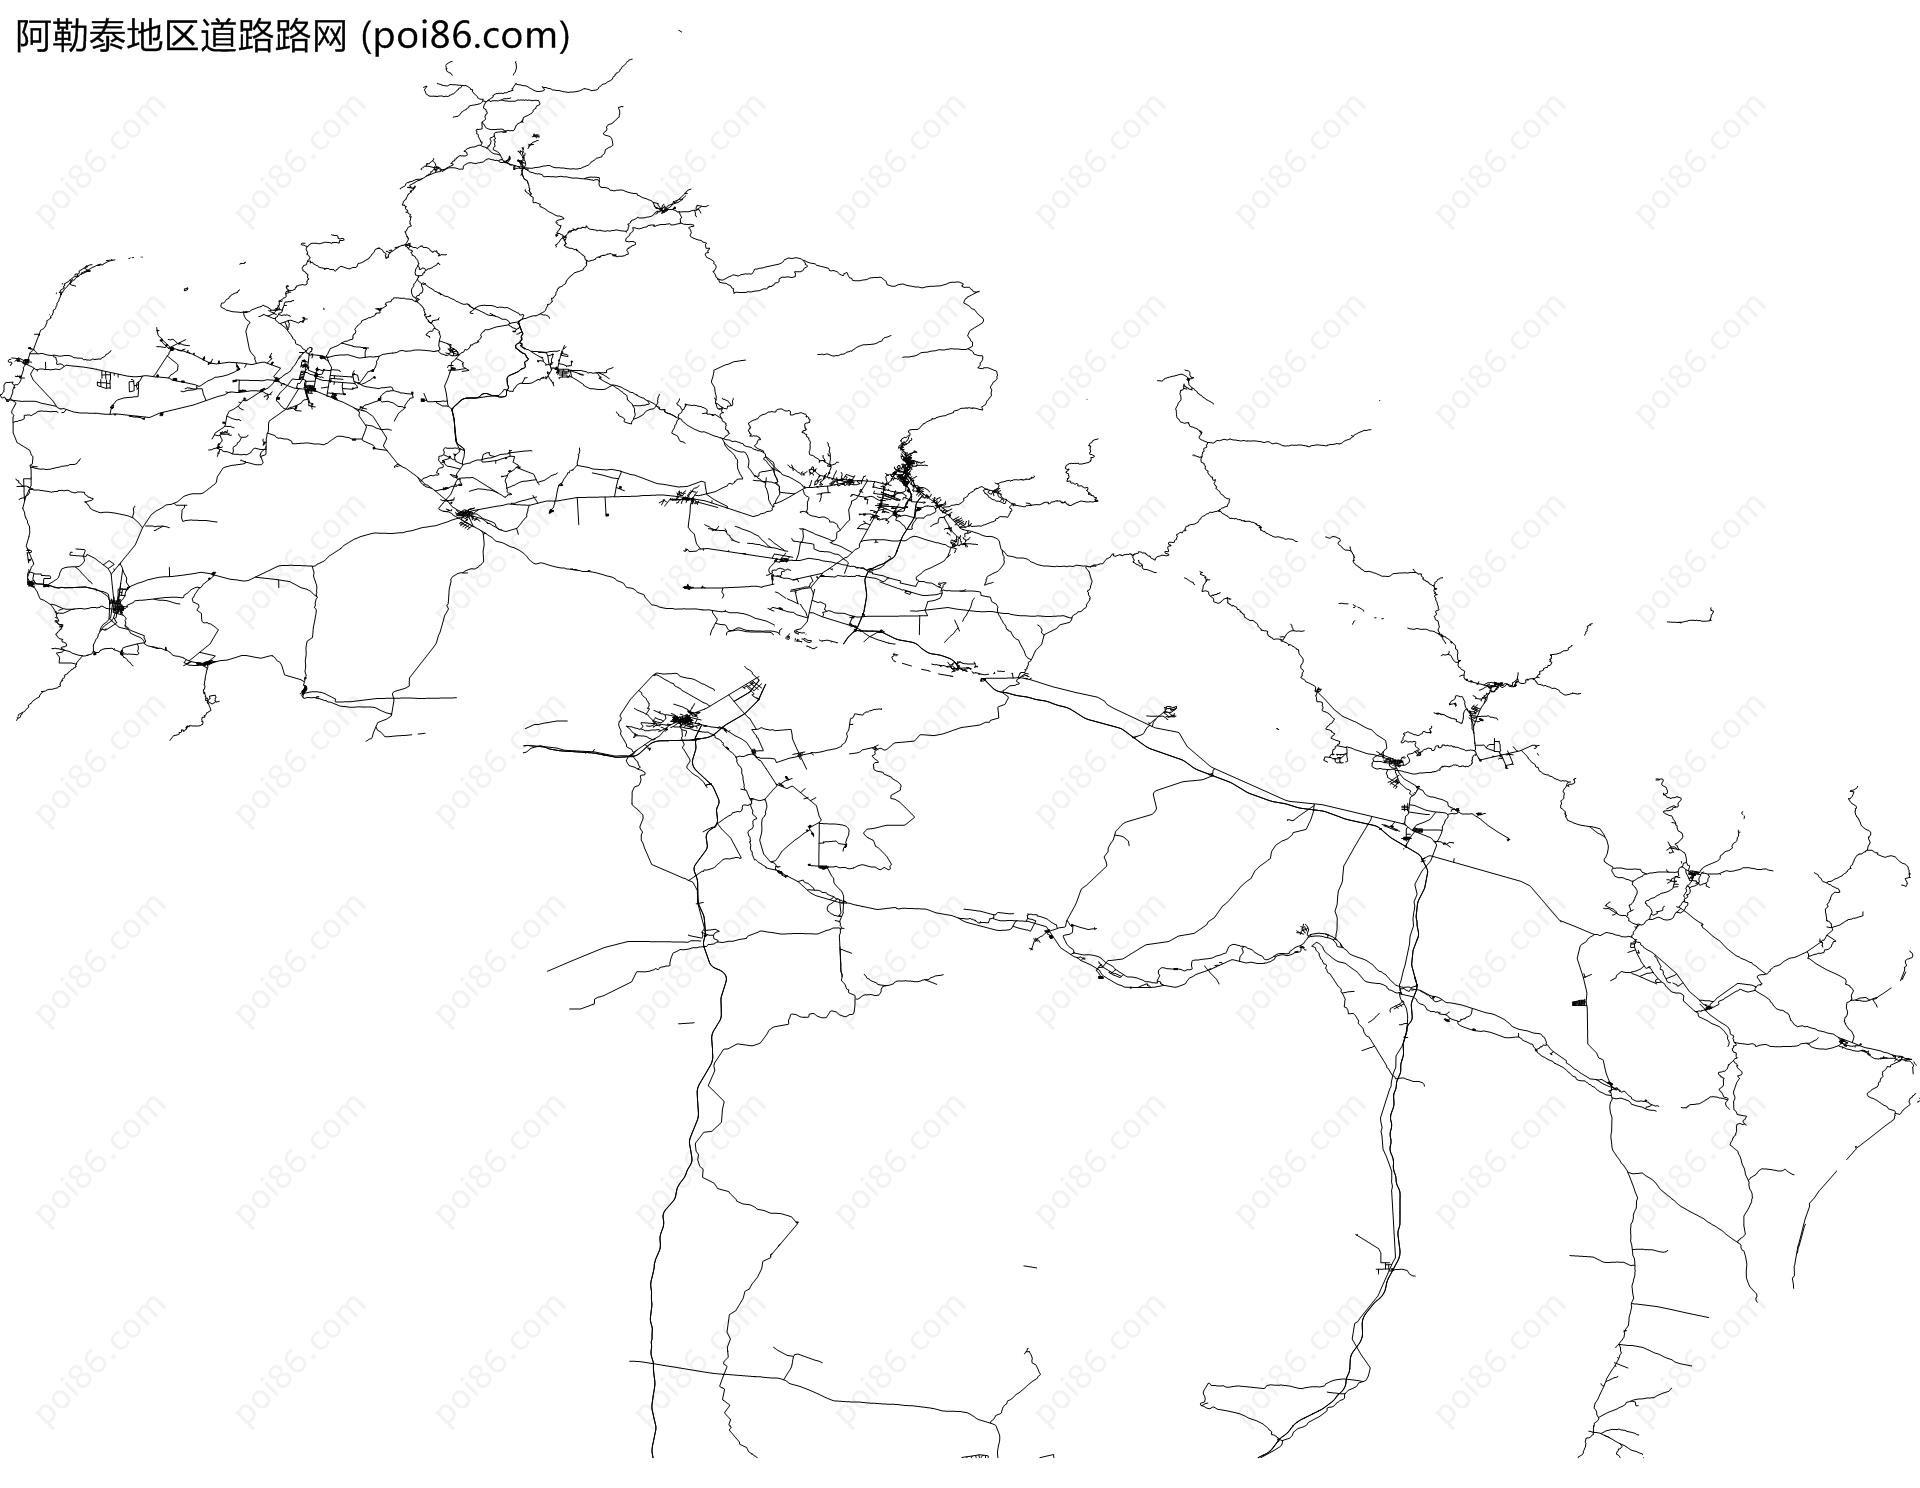 阿勒泰地区道路路网地图